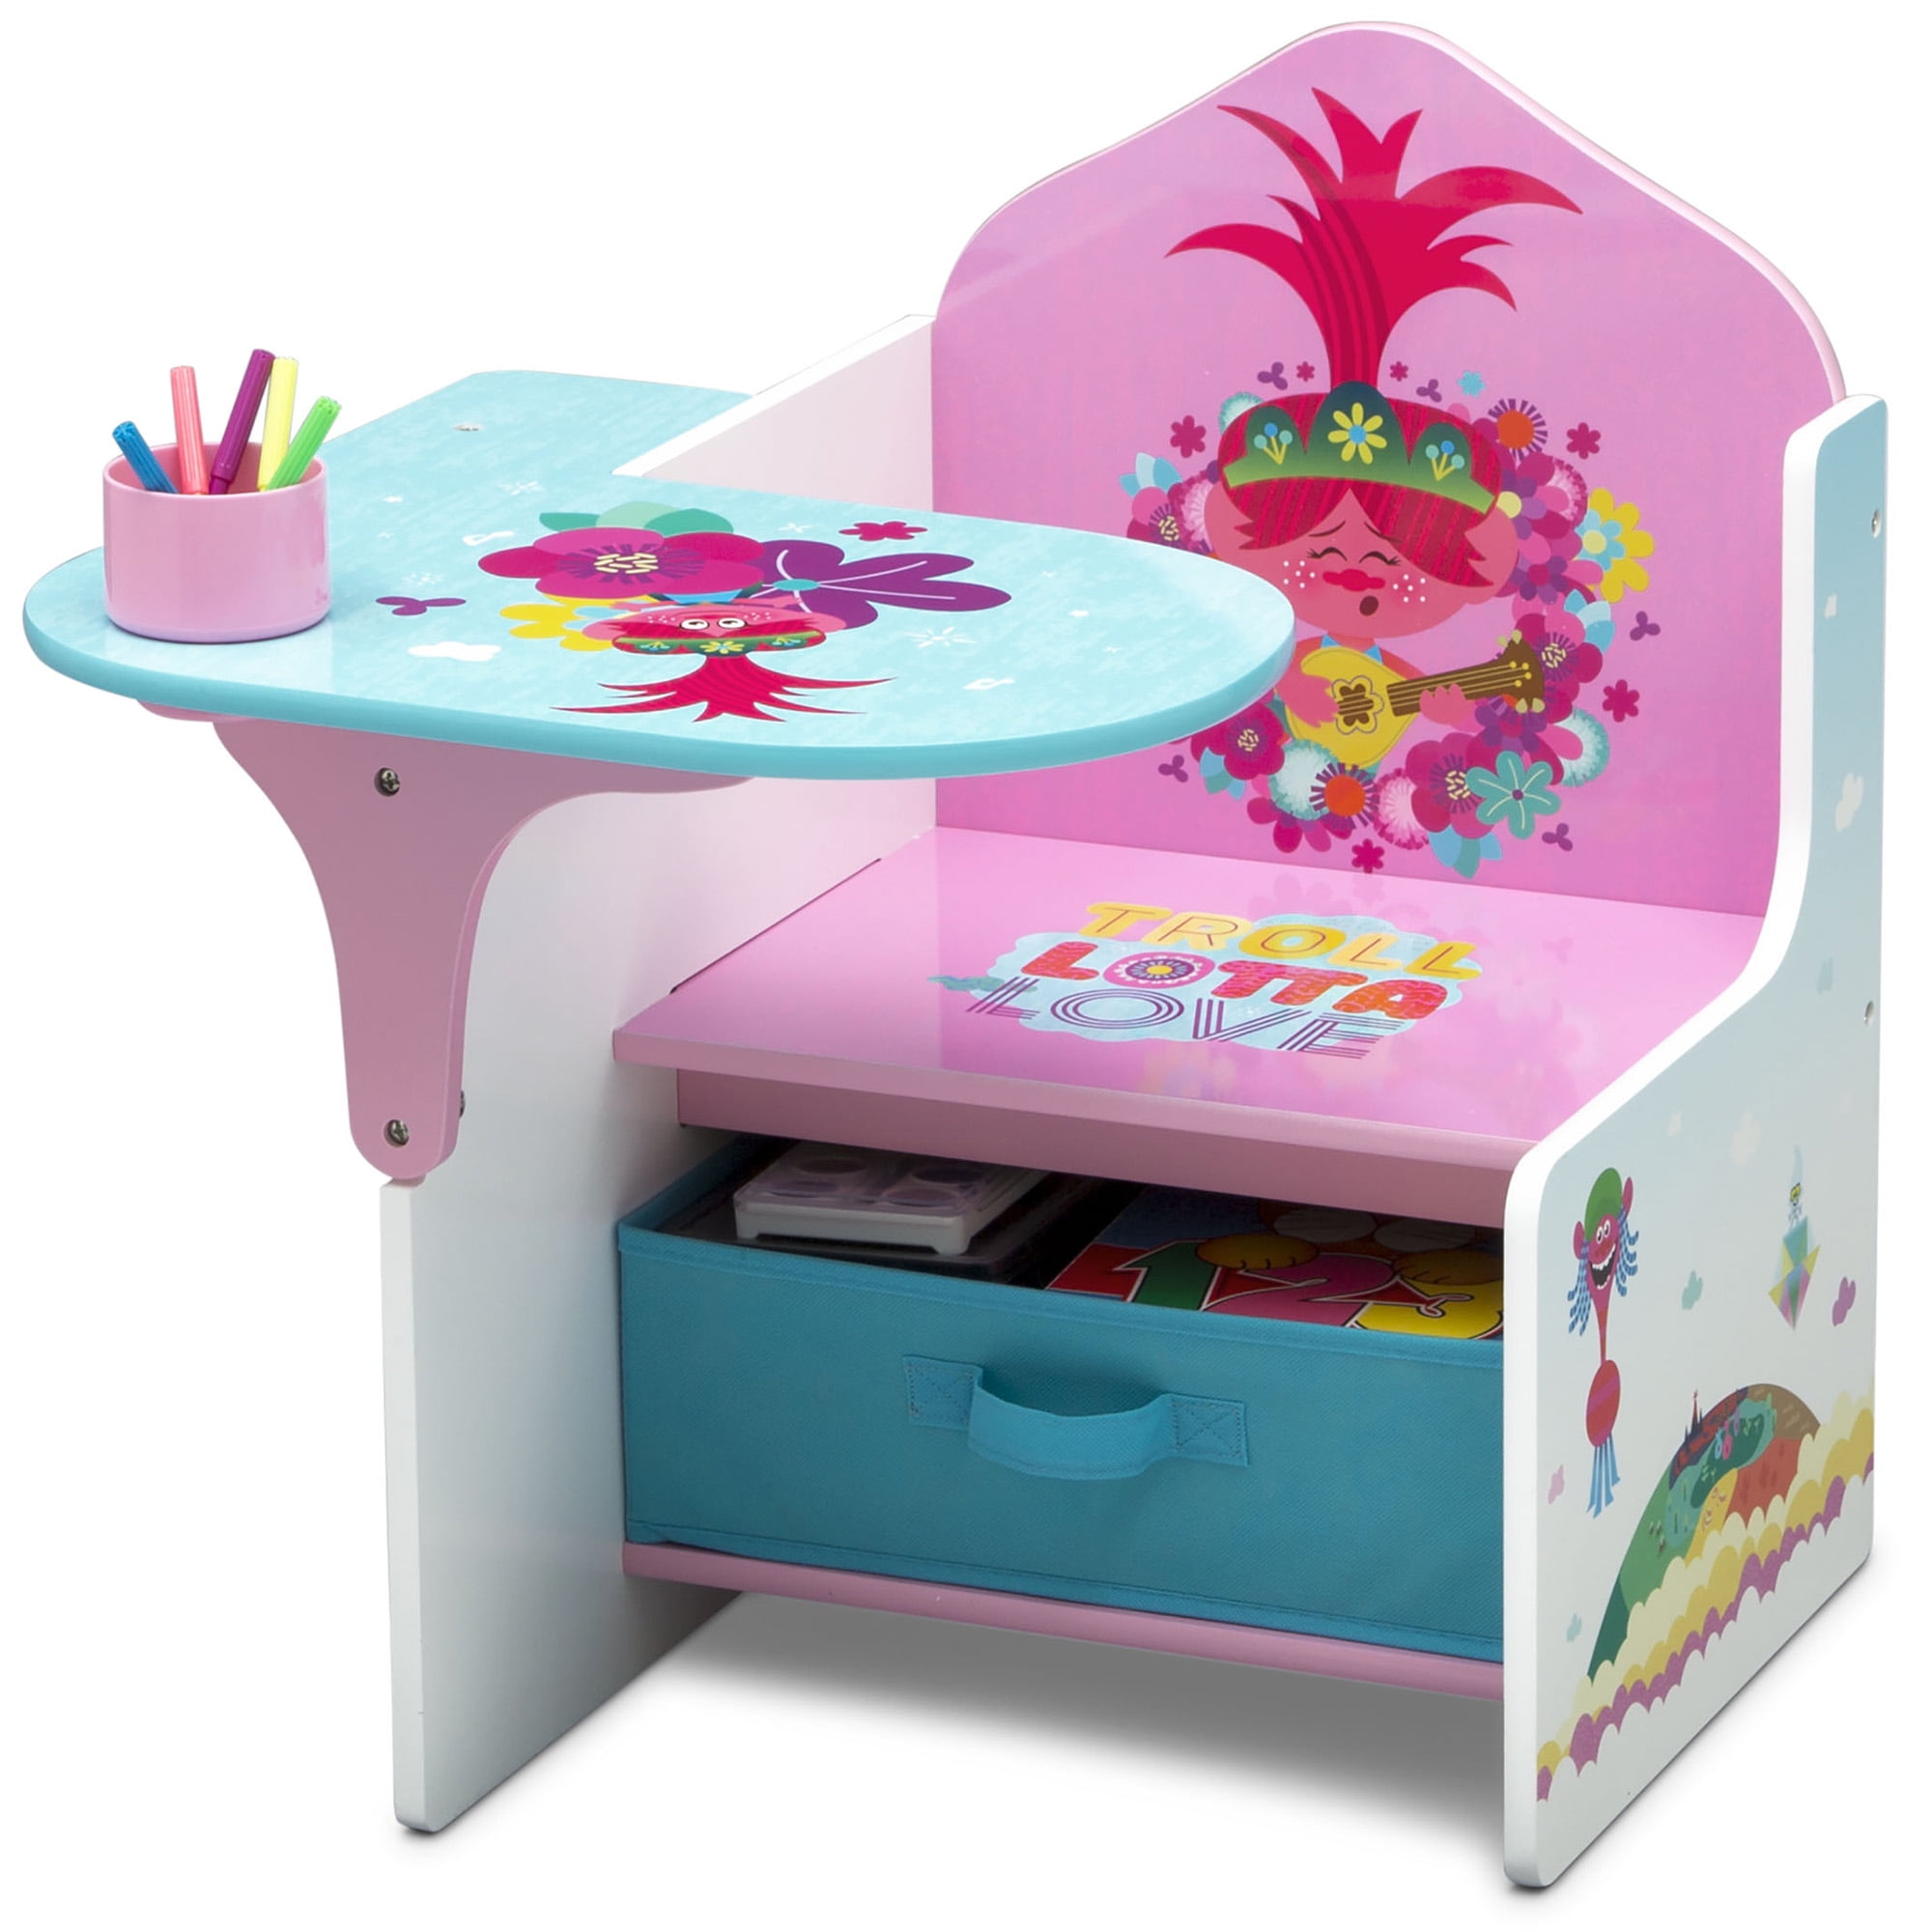 Delta Children Chair Desk with Storage Bin Ideal for Arts & Crafts Snack & PJ 